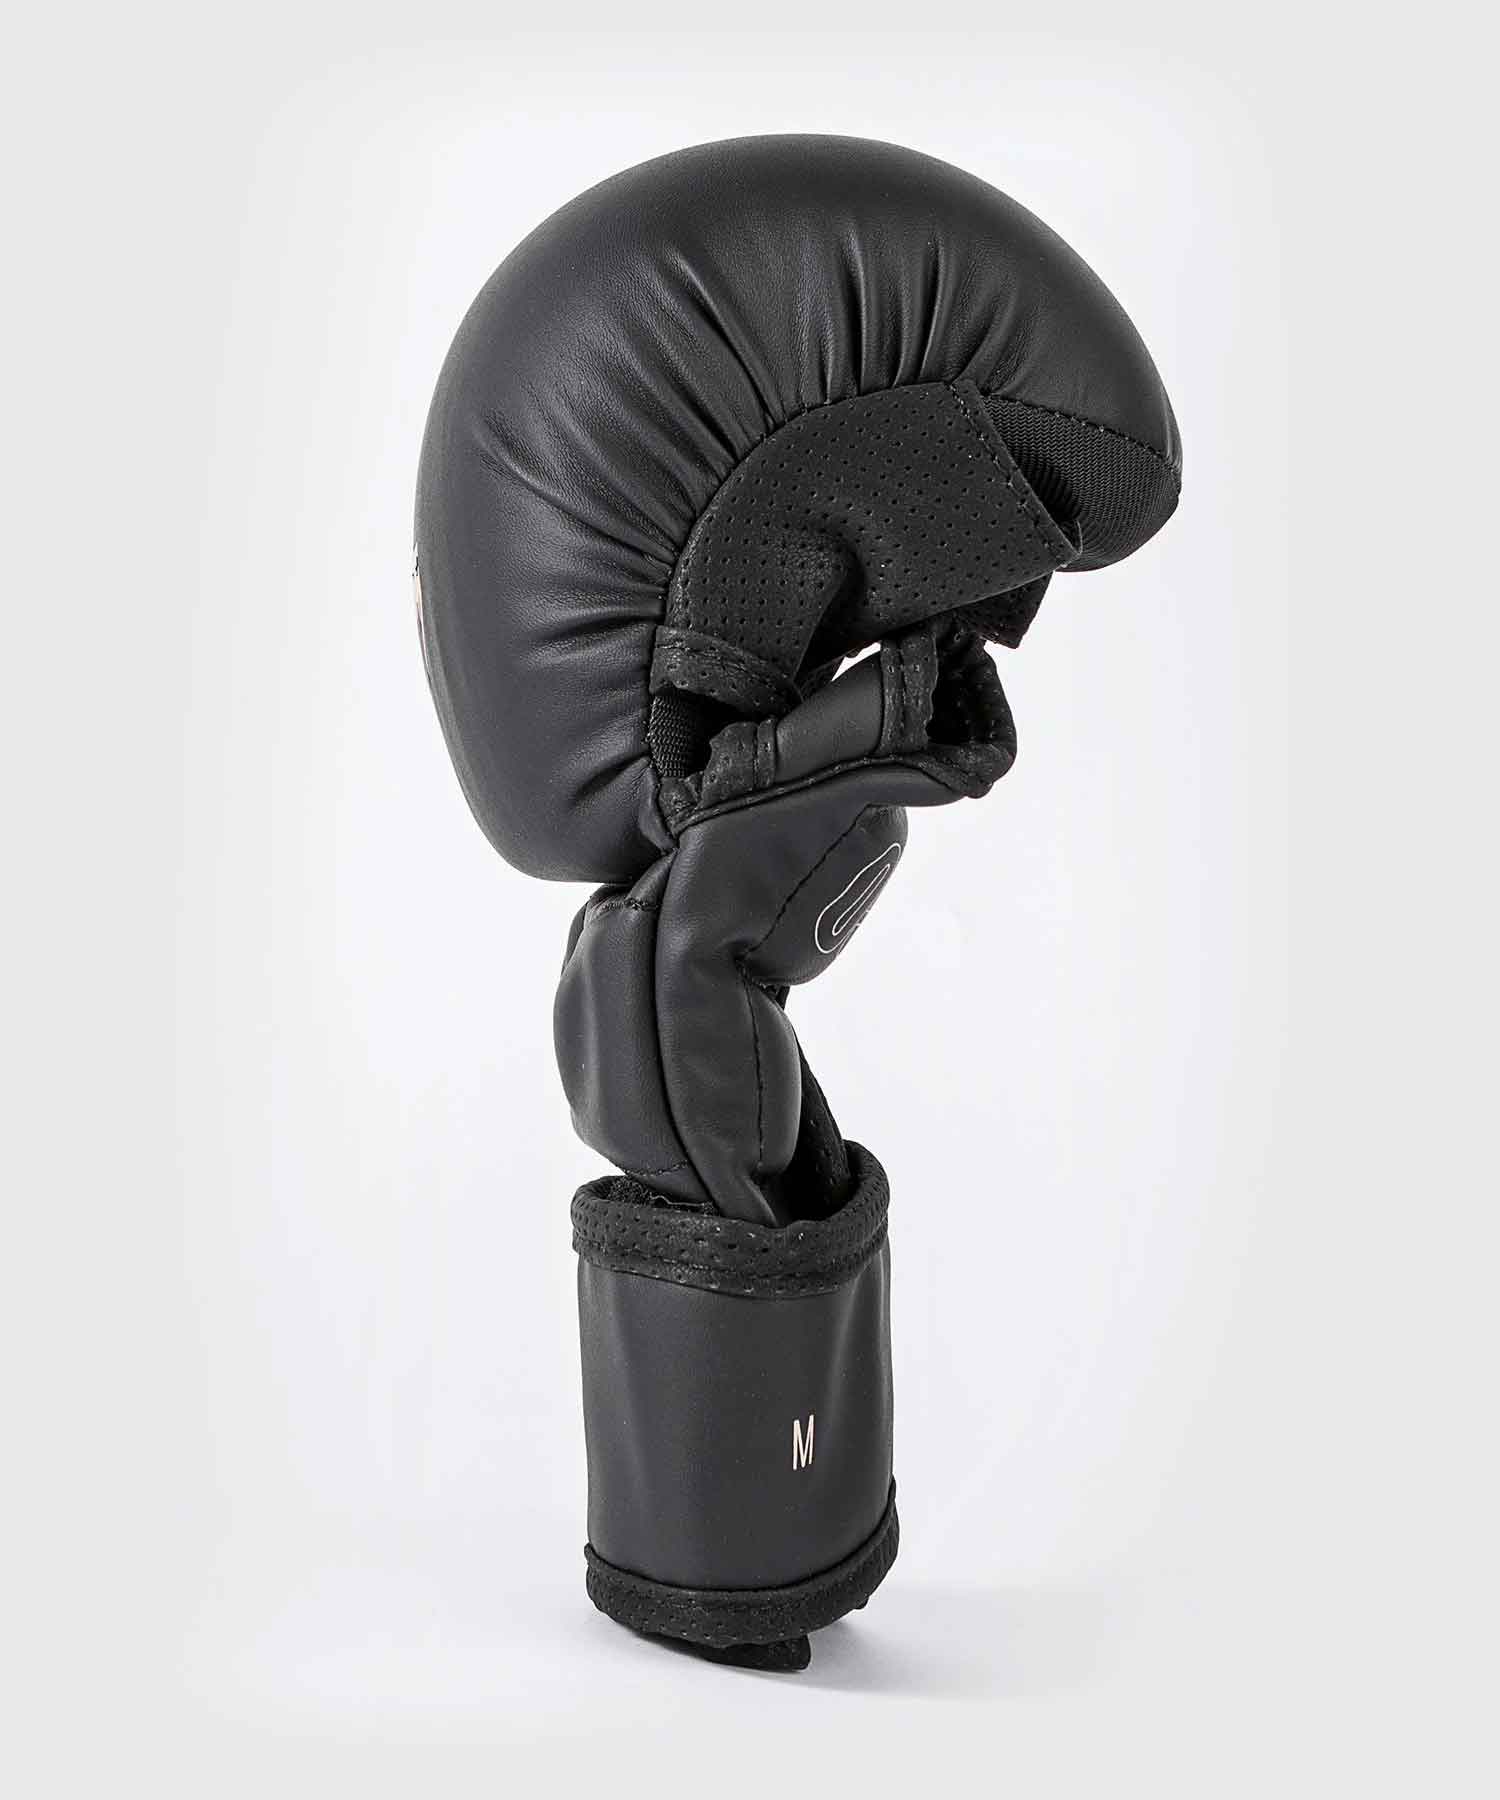 VENUM／ヴェナム　MMAグローブ（オープンフィンガーグローブ）　　Impact Evo Sparring MMA Gloves／インパクト エヴォ スパーリング MMAグローブ